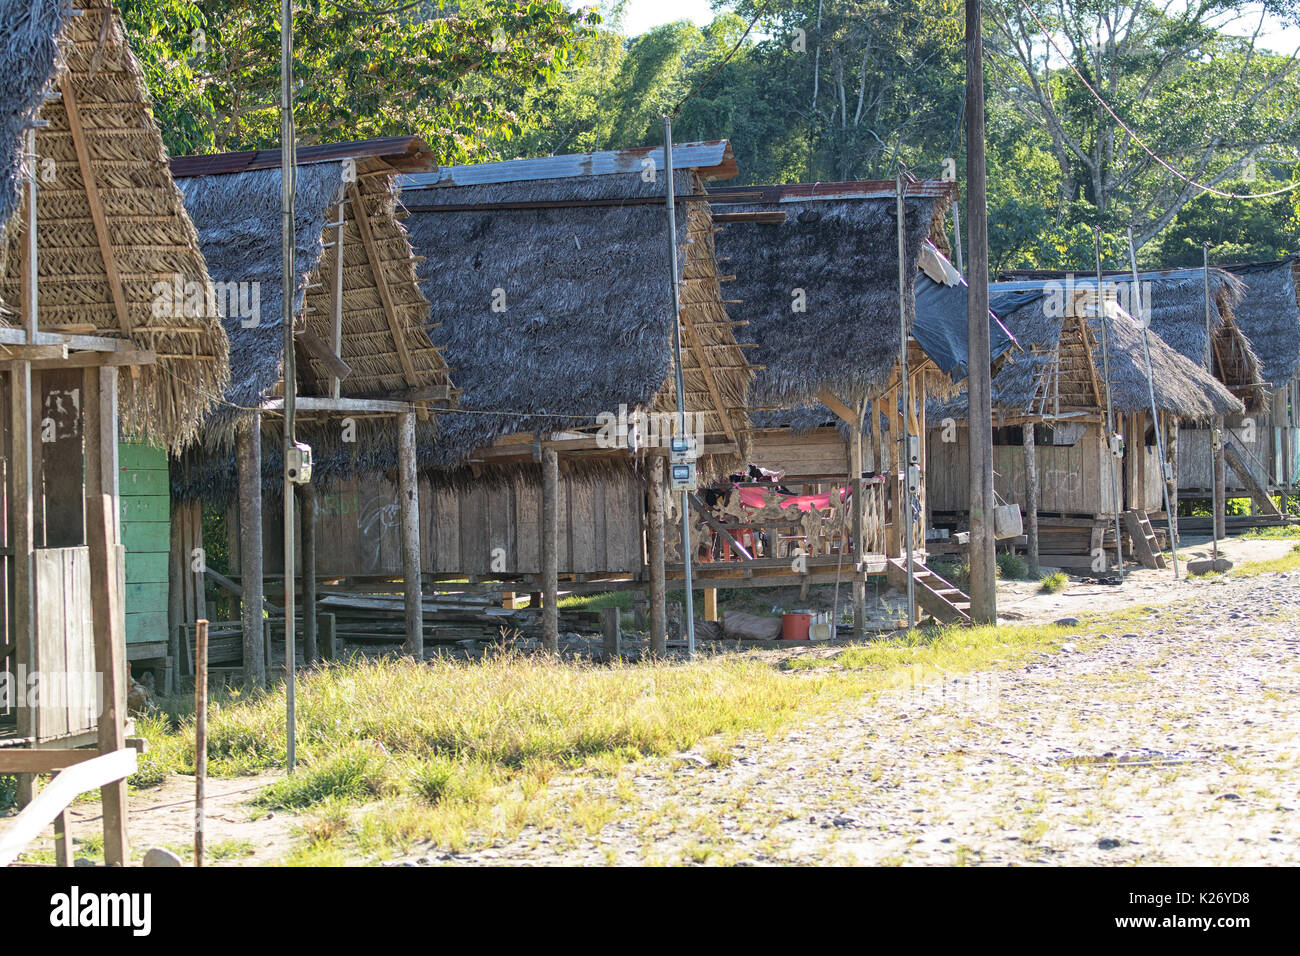 Juni 6, 2017 Misahualli, Ecuador: Zeile der kleinen Behausung Hütten aus Holz Bohlen im Amazonasgebiet gemacht Stockfoto